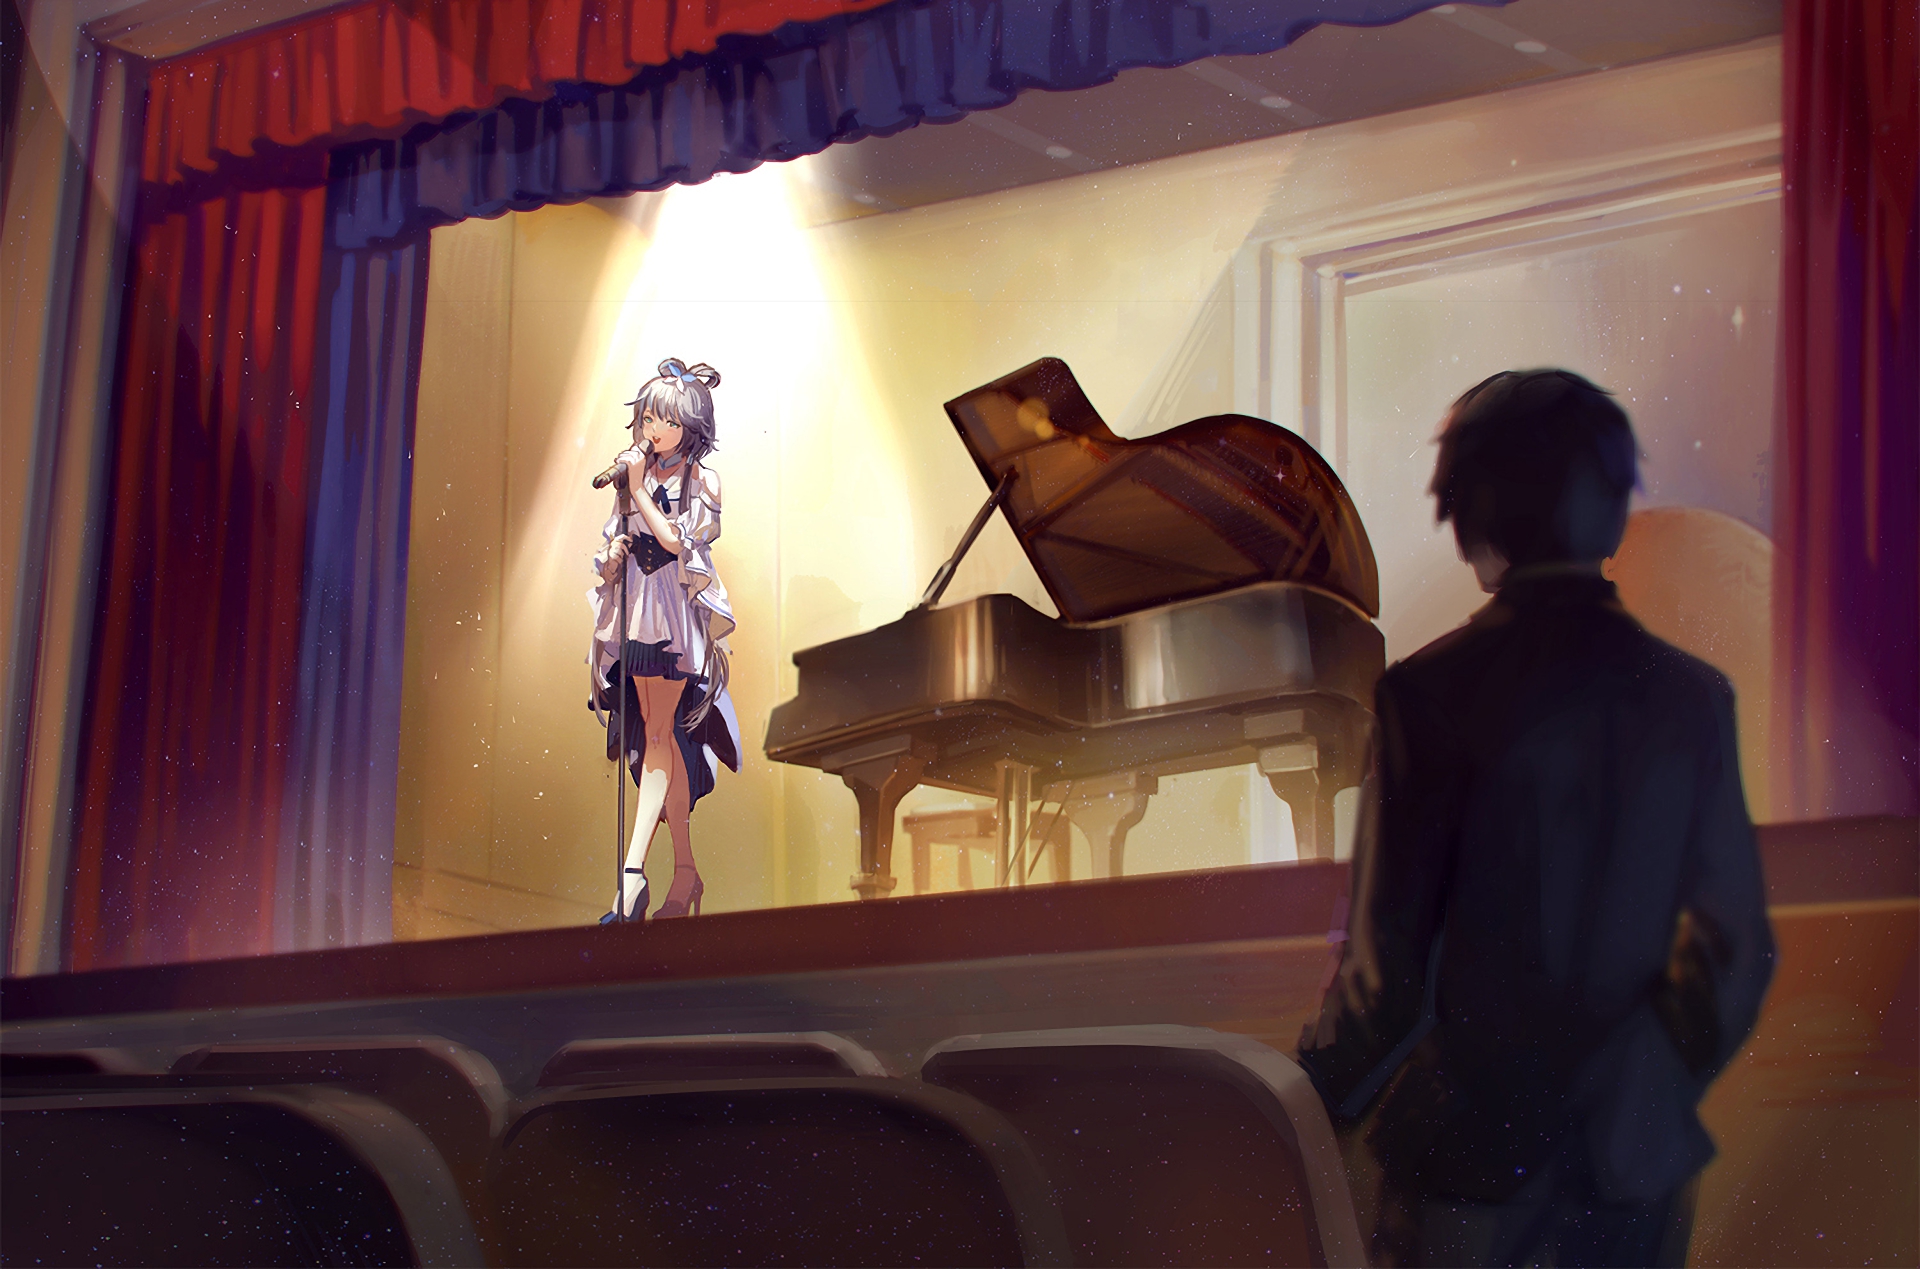 Vocaloid HD Wallpaper